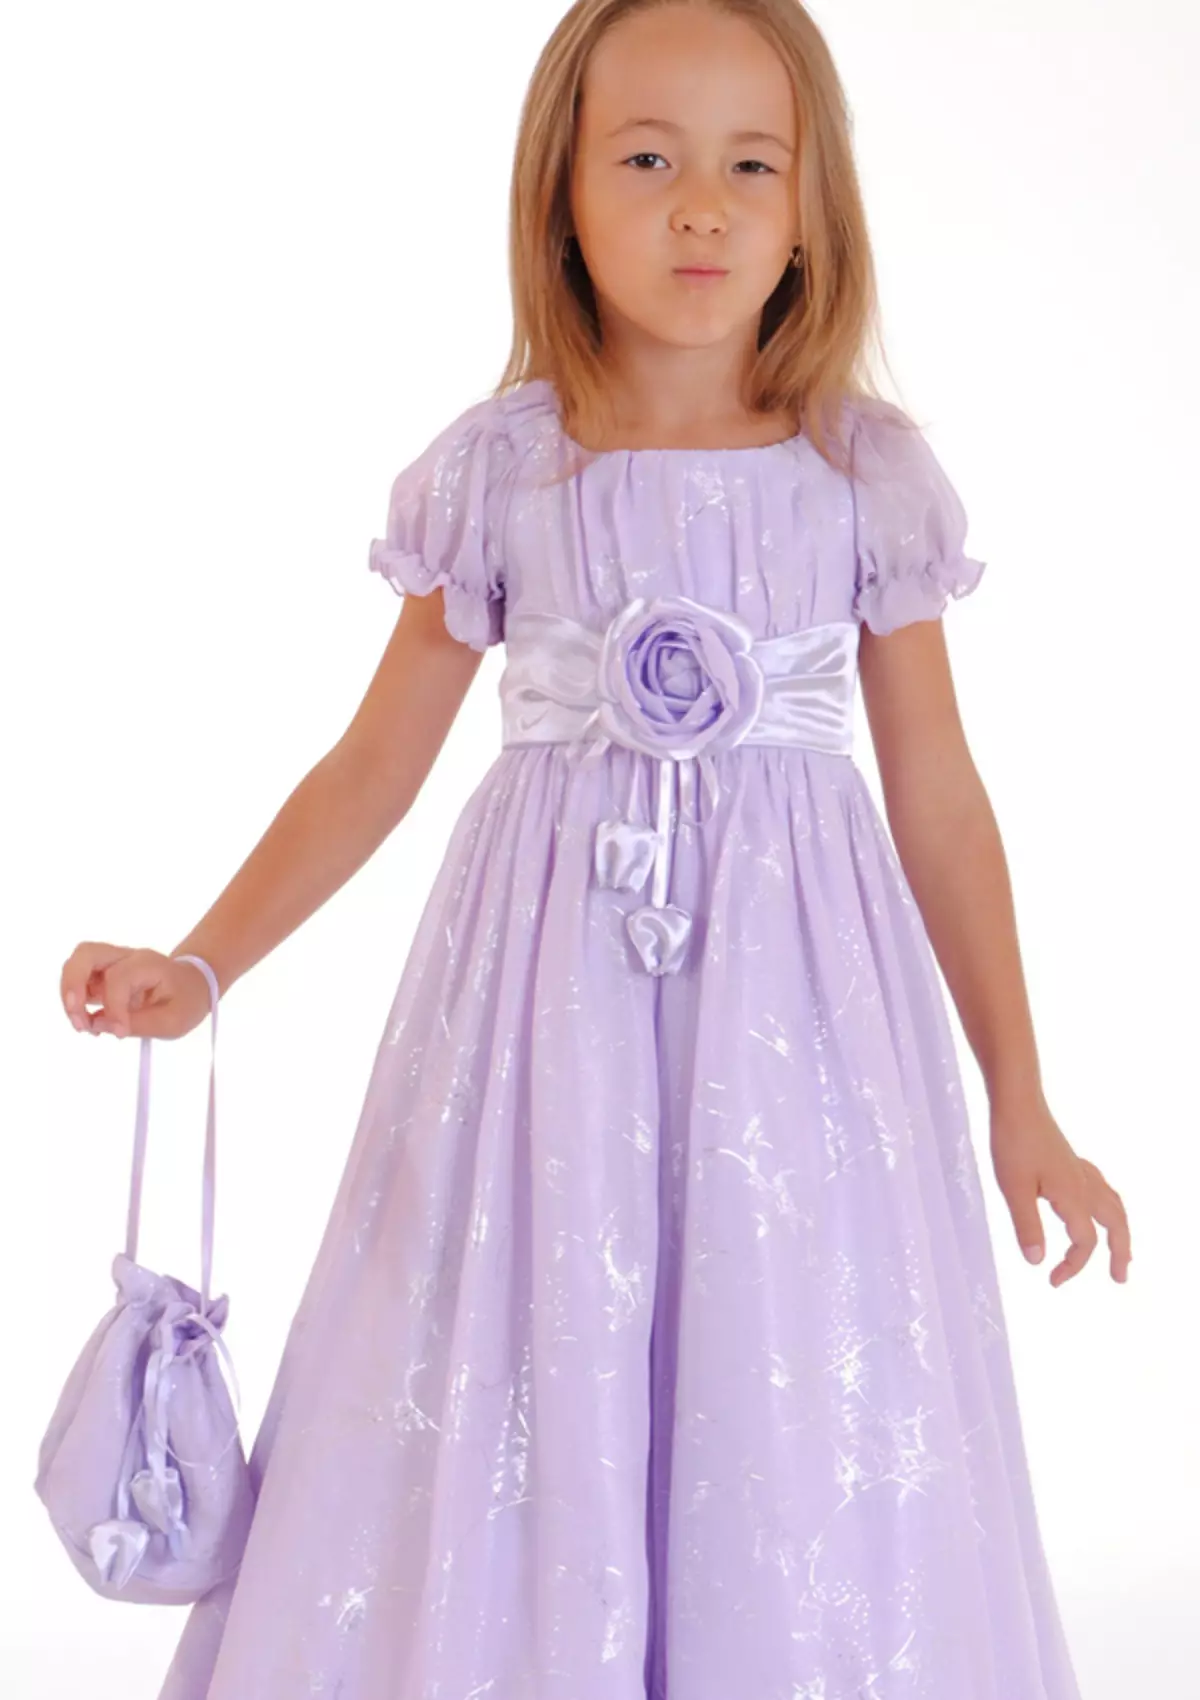 Cutie Susie (52 Fotos): Schuluniform, Kleider, Kostüme und andere Kinderbekleidung für Mädchen 7 Jahre, Produktbewertungen 3792_41